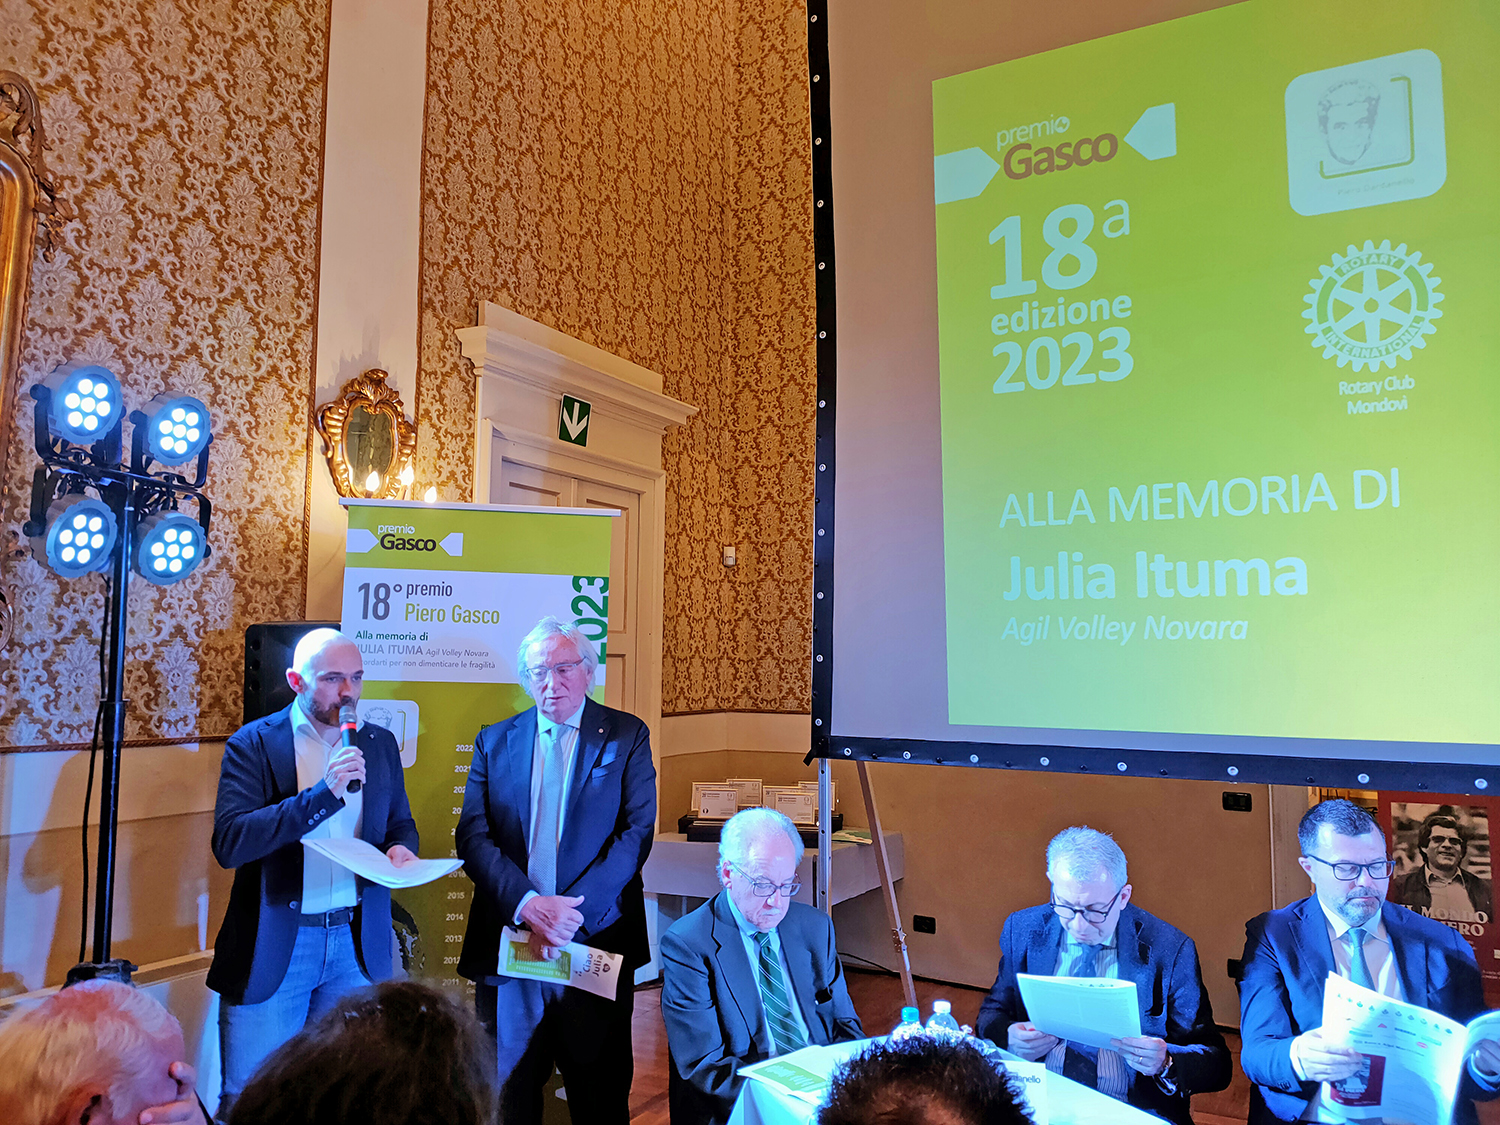 Il premio ‘Gasco’ 2023 va alla memoria di Julia Ituma